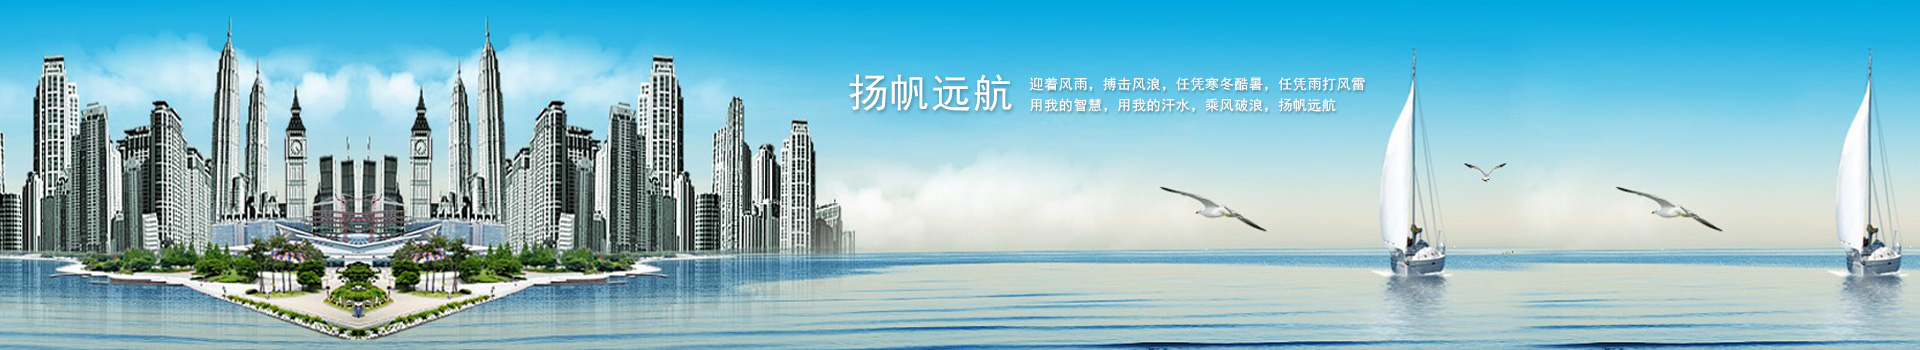 上海新茶资源,上海娱乐网,爱上海同城交友,上海娱乐网